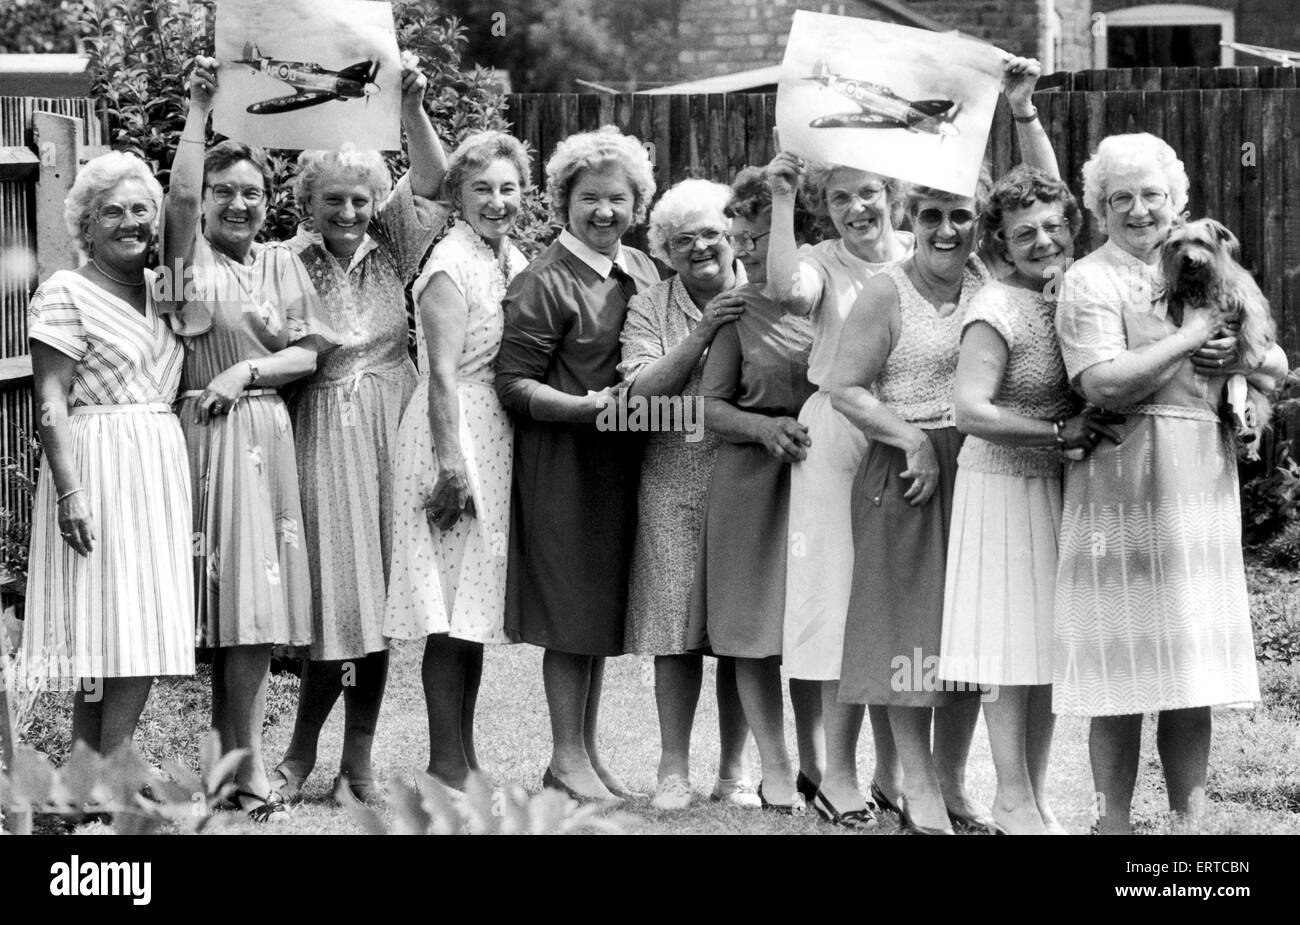 Reunion per Spitfire lavoratori che assemblato le ali dell'iconico British aerei da combattimento in Newhall Street, Birmingham centrale durante il 1941 e 1942. hey erano tutte le ragazze nubili in fabbrica dove hanno lavorato sette giorni a settimana per 4 sterline premi inclusi. J Foto Stock